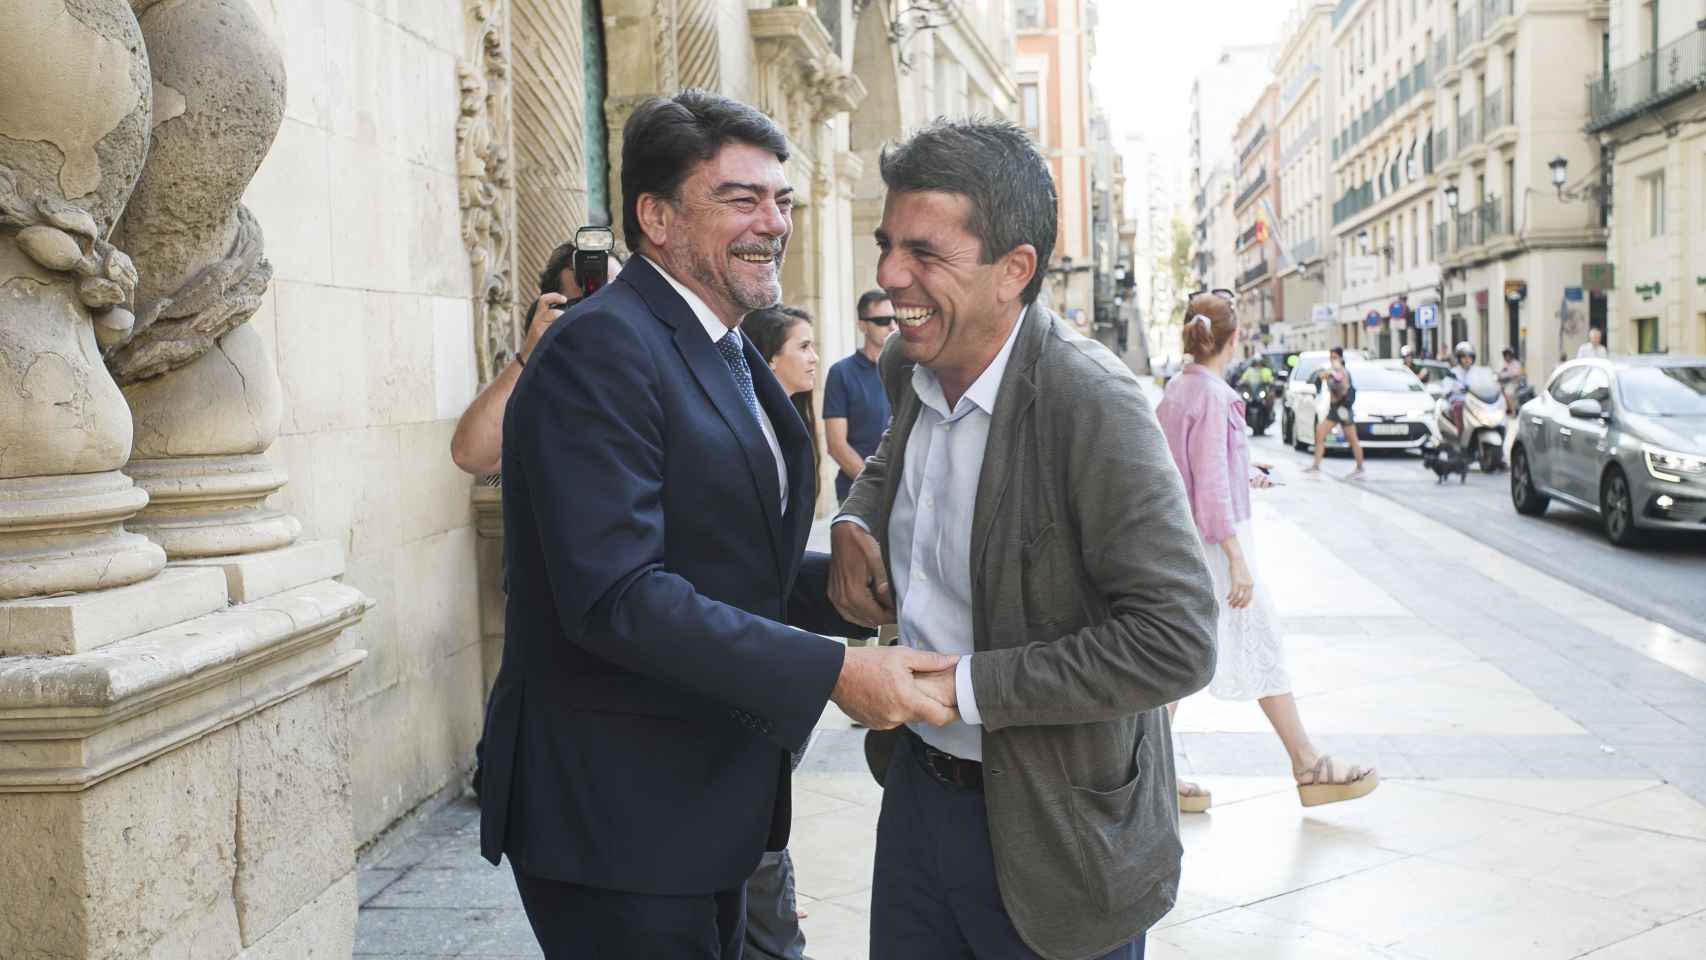 El jefe del Consell, Carlos Mazón, se reúne con el alcalde de Alicante, Luis Barcala, para anunciar la puesta en marcha de varios proyectos en la ciudad.